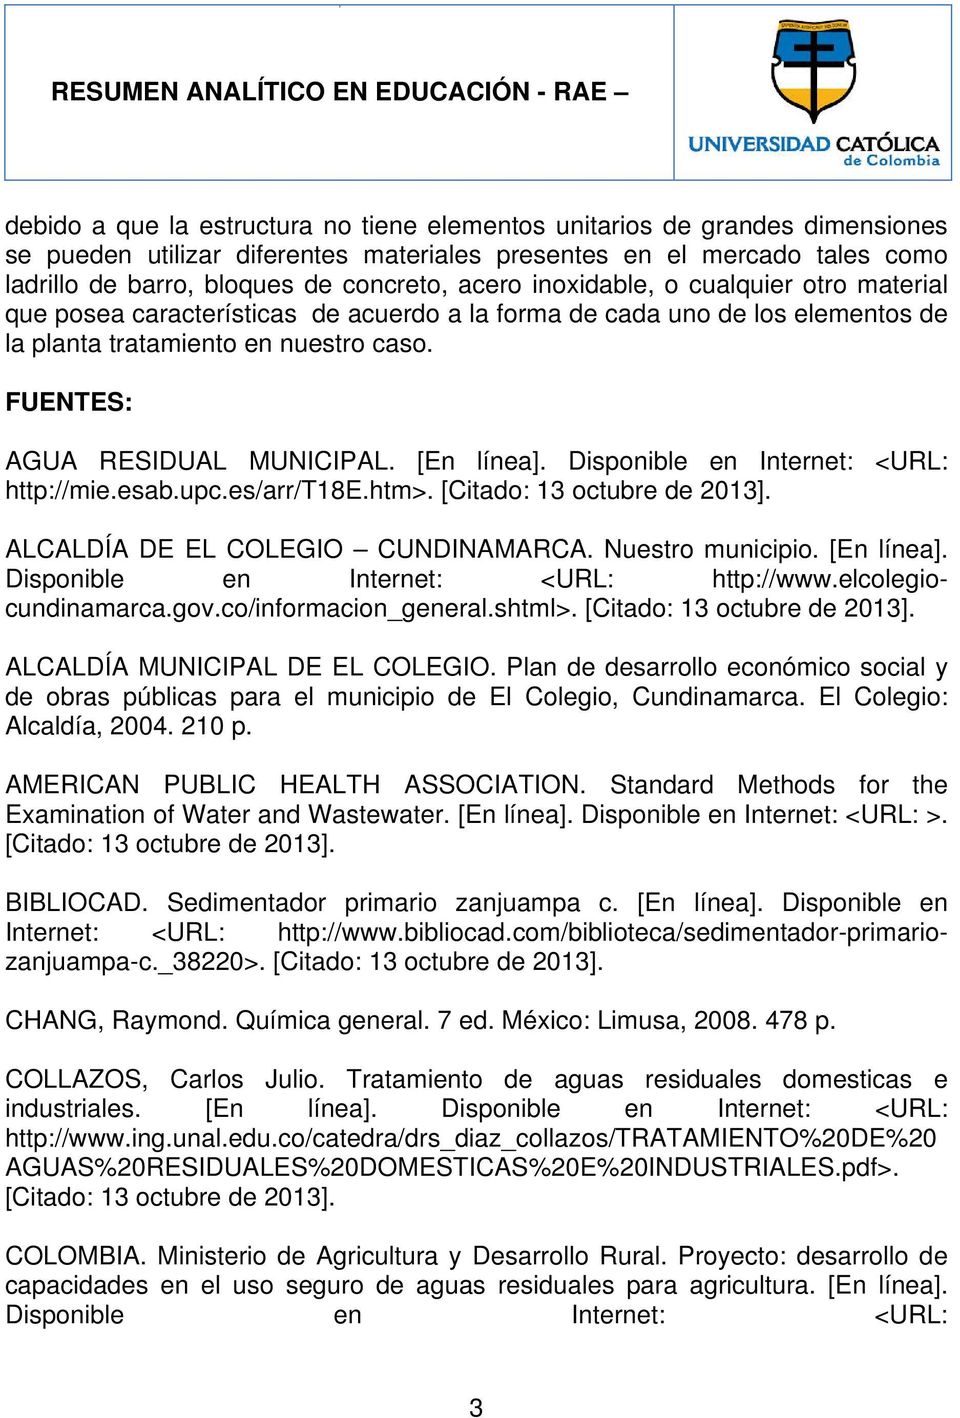 [En línea]. Disponible en Internet: <URL: http://mie.esab.upc.es/arr/t18e.htm>. ALCALDÍA DE EL COLEGIO CUNDINAMARCA. Nuestro municipio. [En línea]. Disponible en Internet: <URL: http://www.